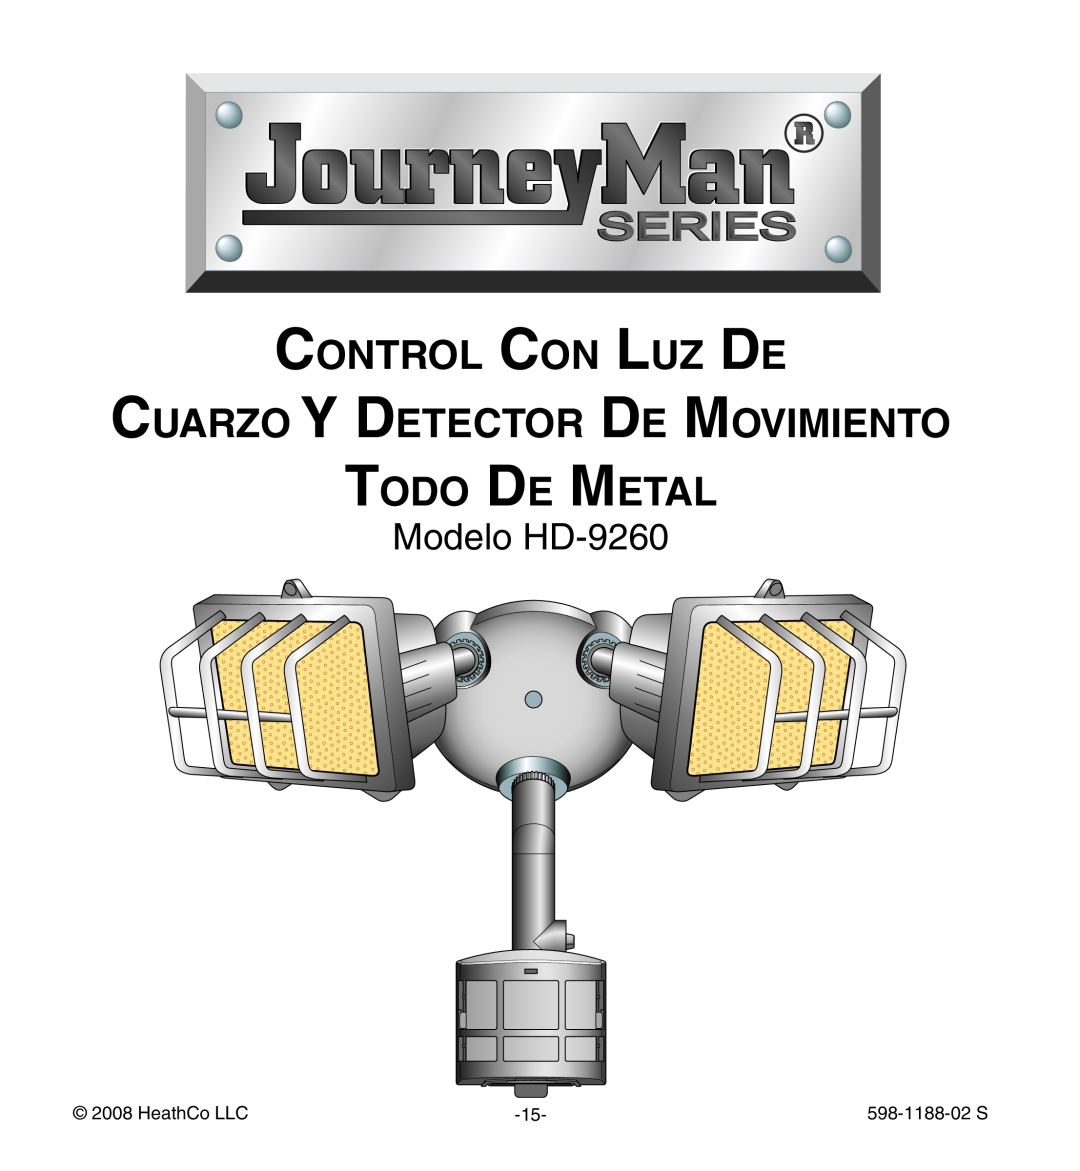 Heath Zenith manual Control Con Luz De, Cuarzo Y Detector De Movimiento Todo De Metal, Modelo HD-9260, HeathCo LLC 